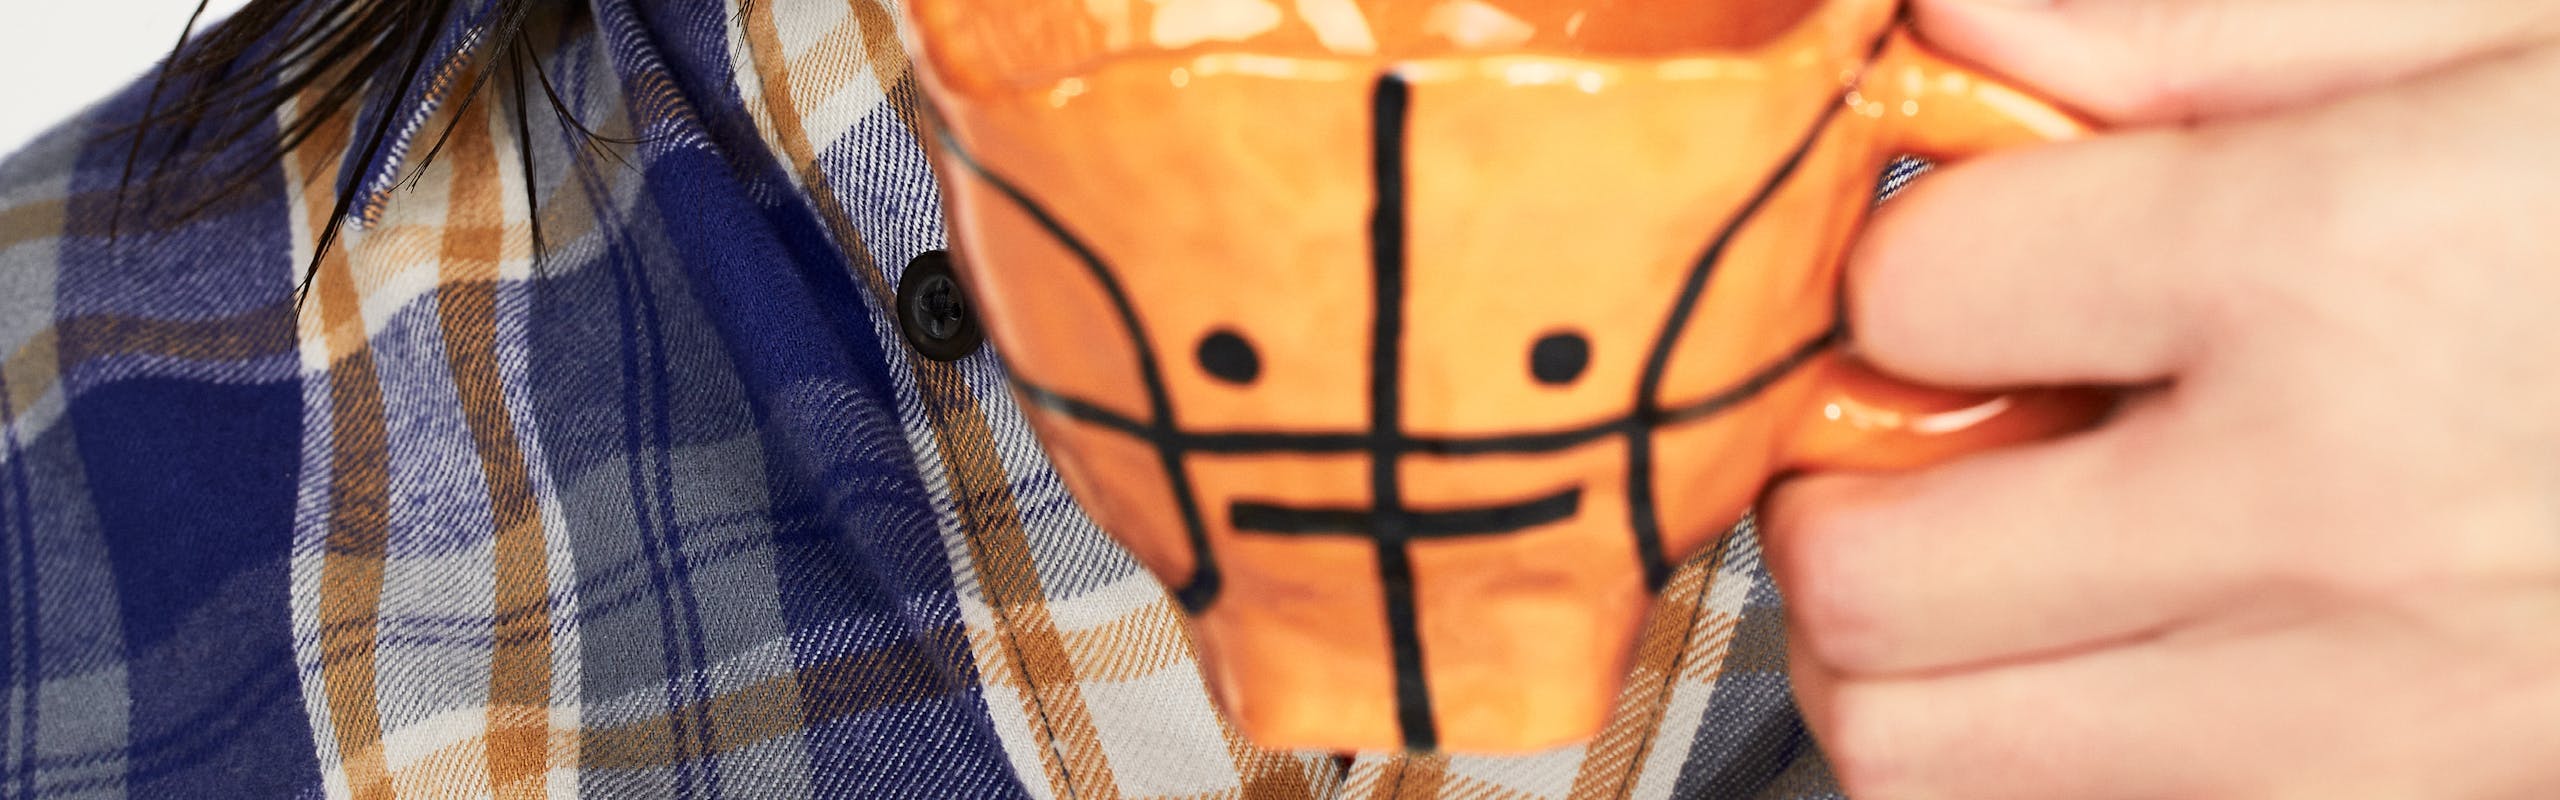 Modella orientale ssorseggia da una tazzina da tè con la forma di una palla da basket